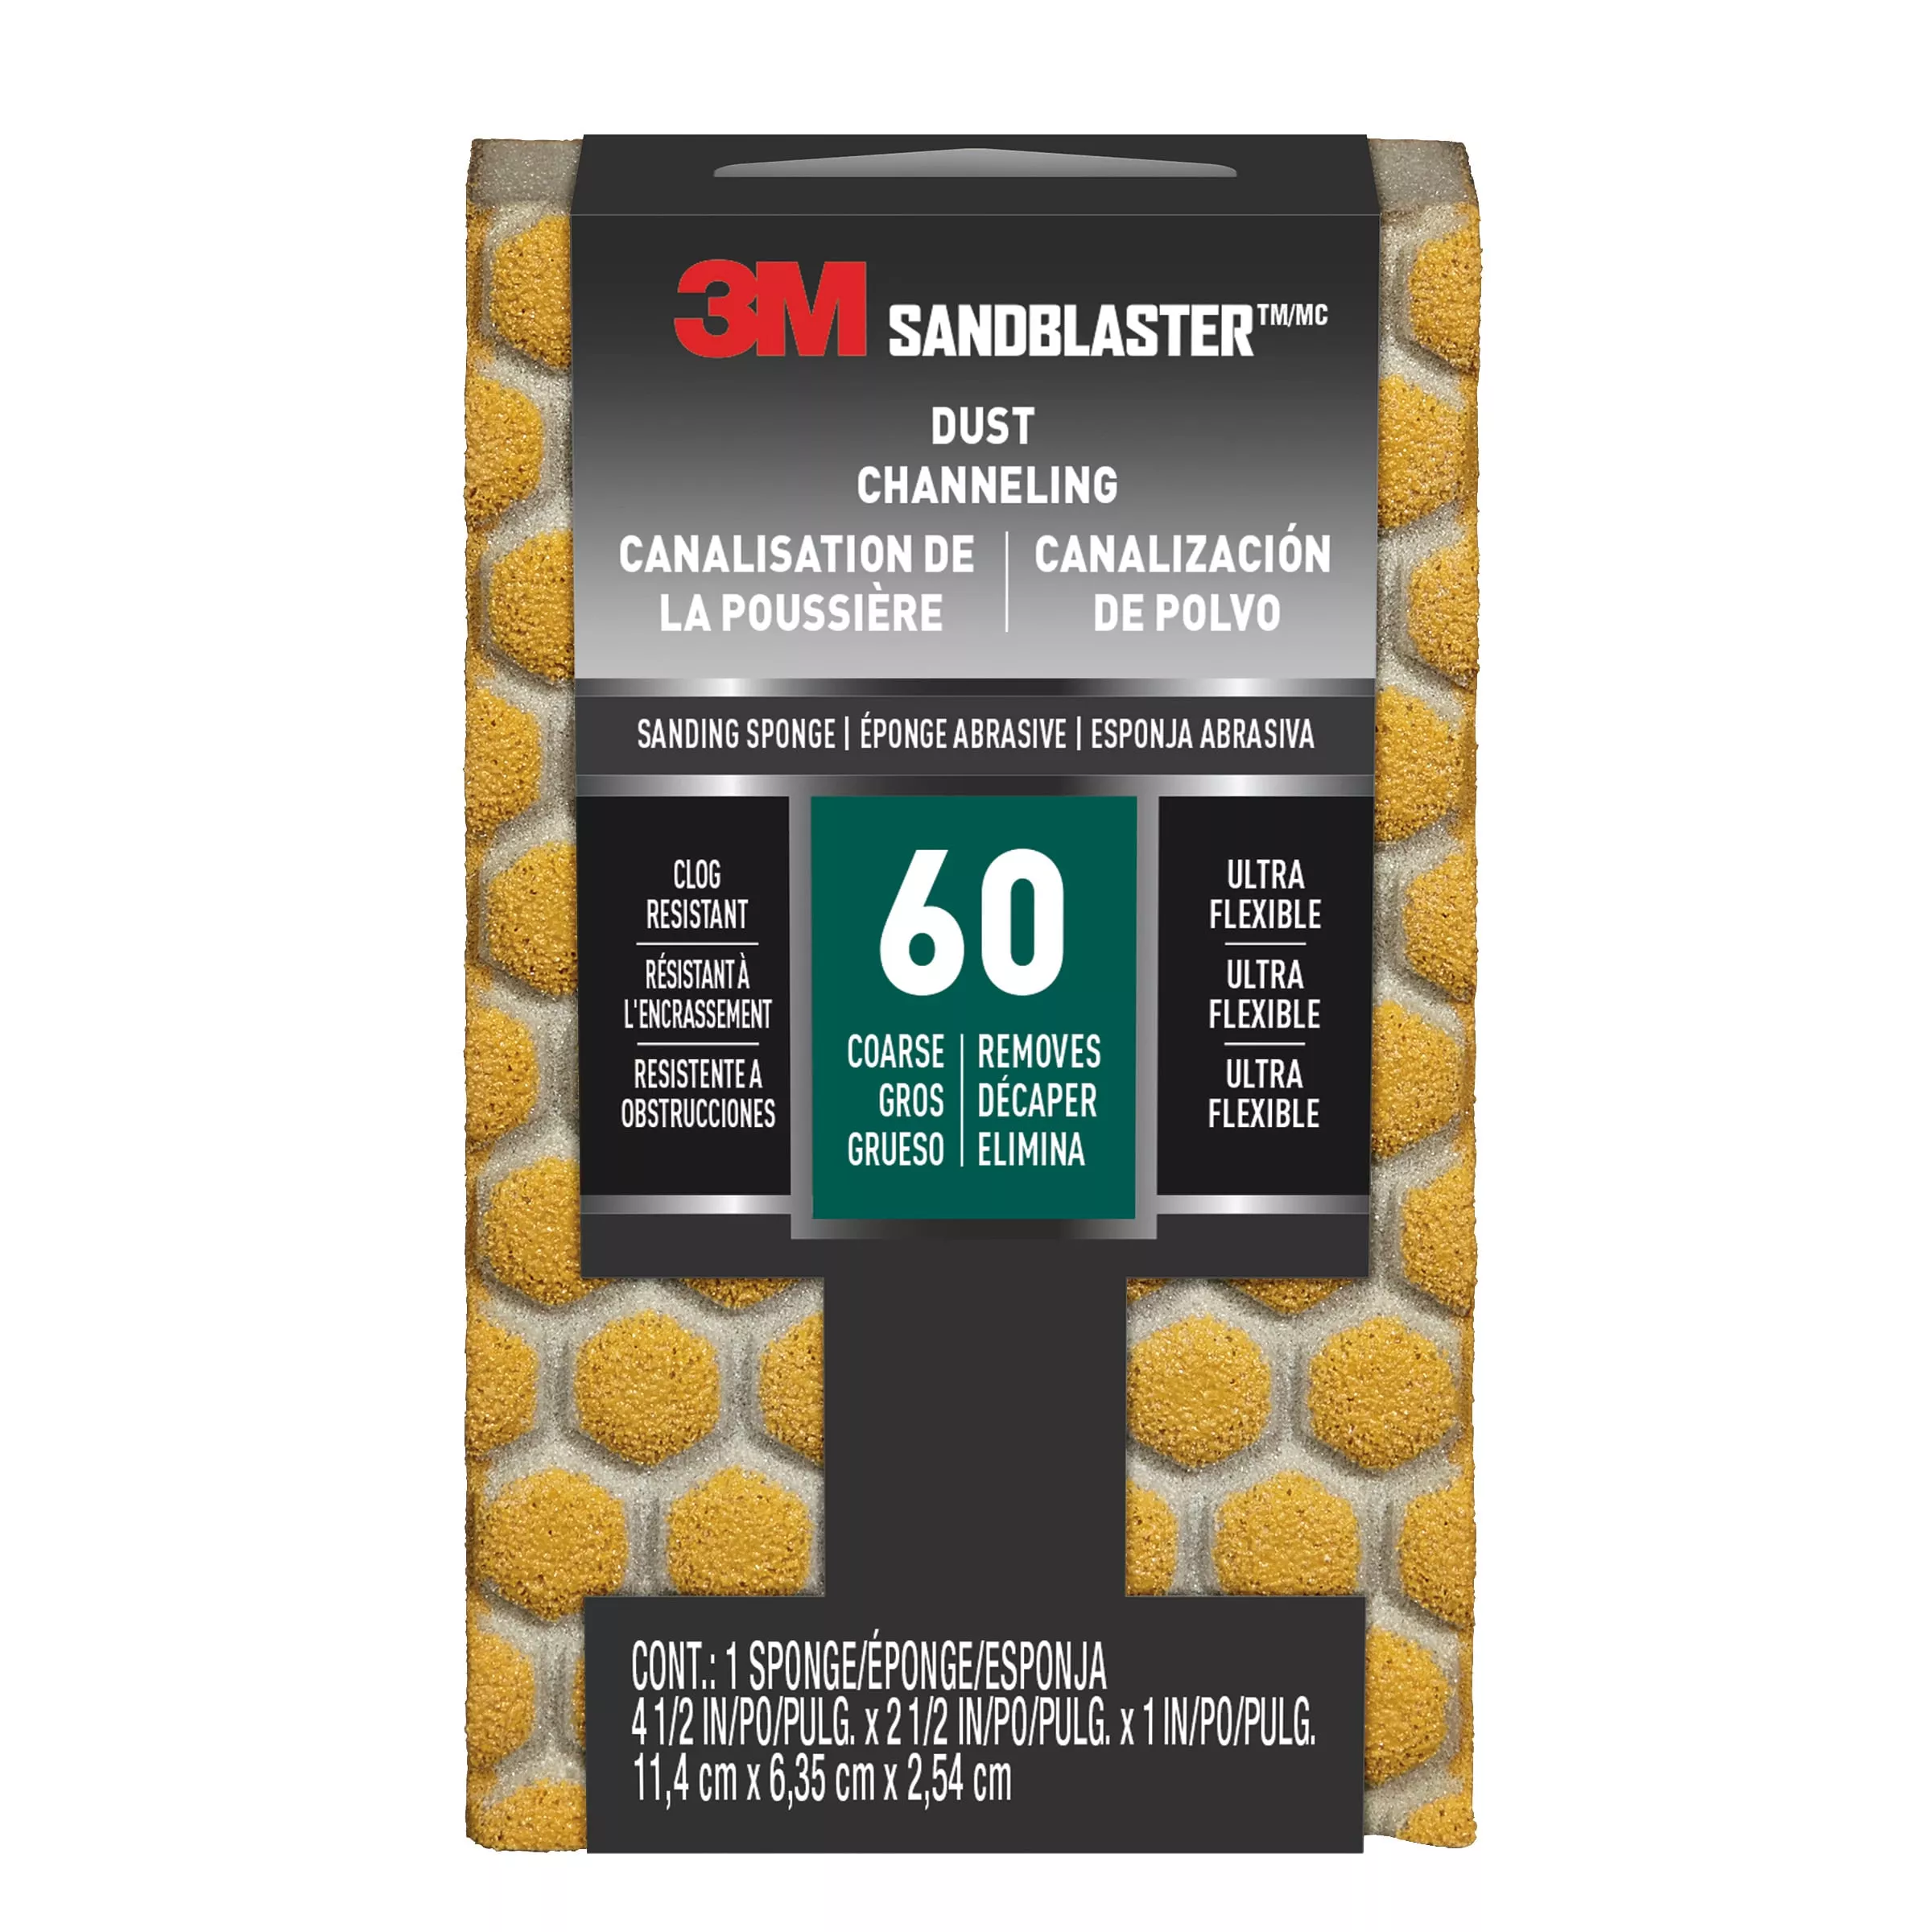 3M™ SandBlaster™ DUST CHANNELING Sanding Sponge, 20909-60-UFS ,60 grit,
4 1/2 in x 2 1/2 x 1 in, 1/pk